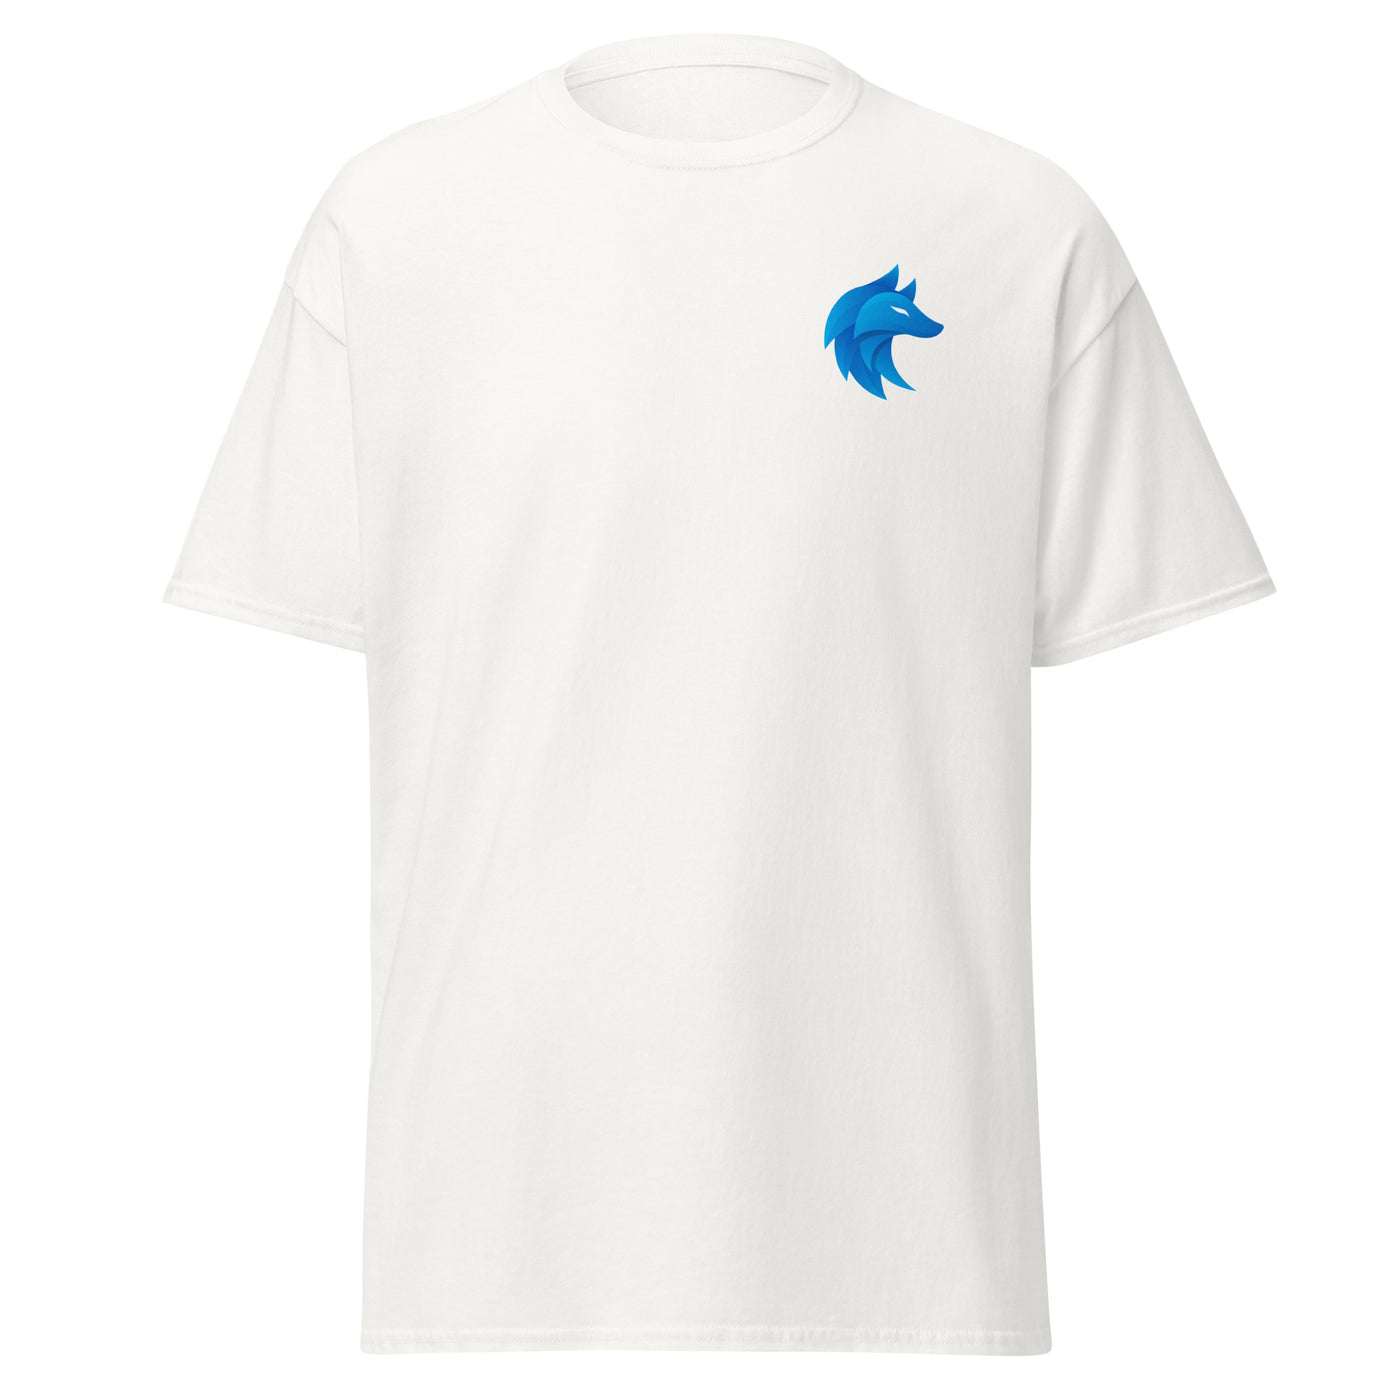 Packgg Unisex T-Shirt